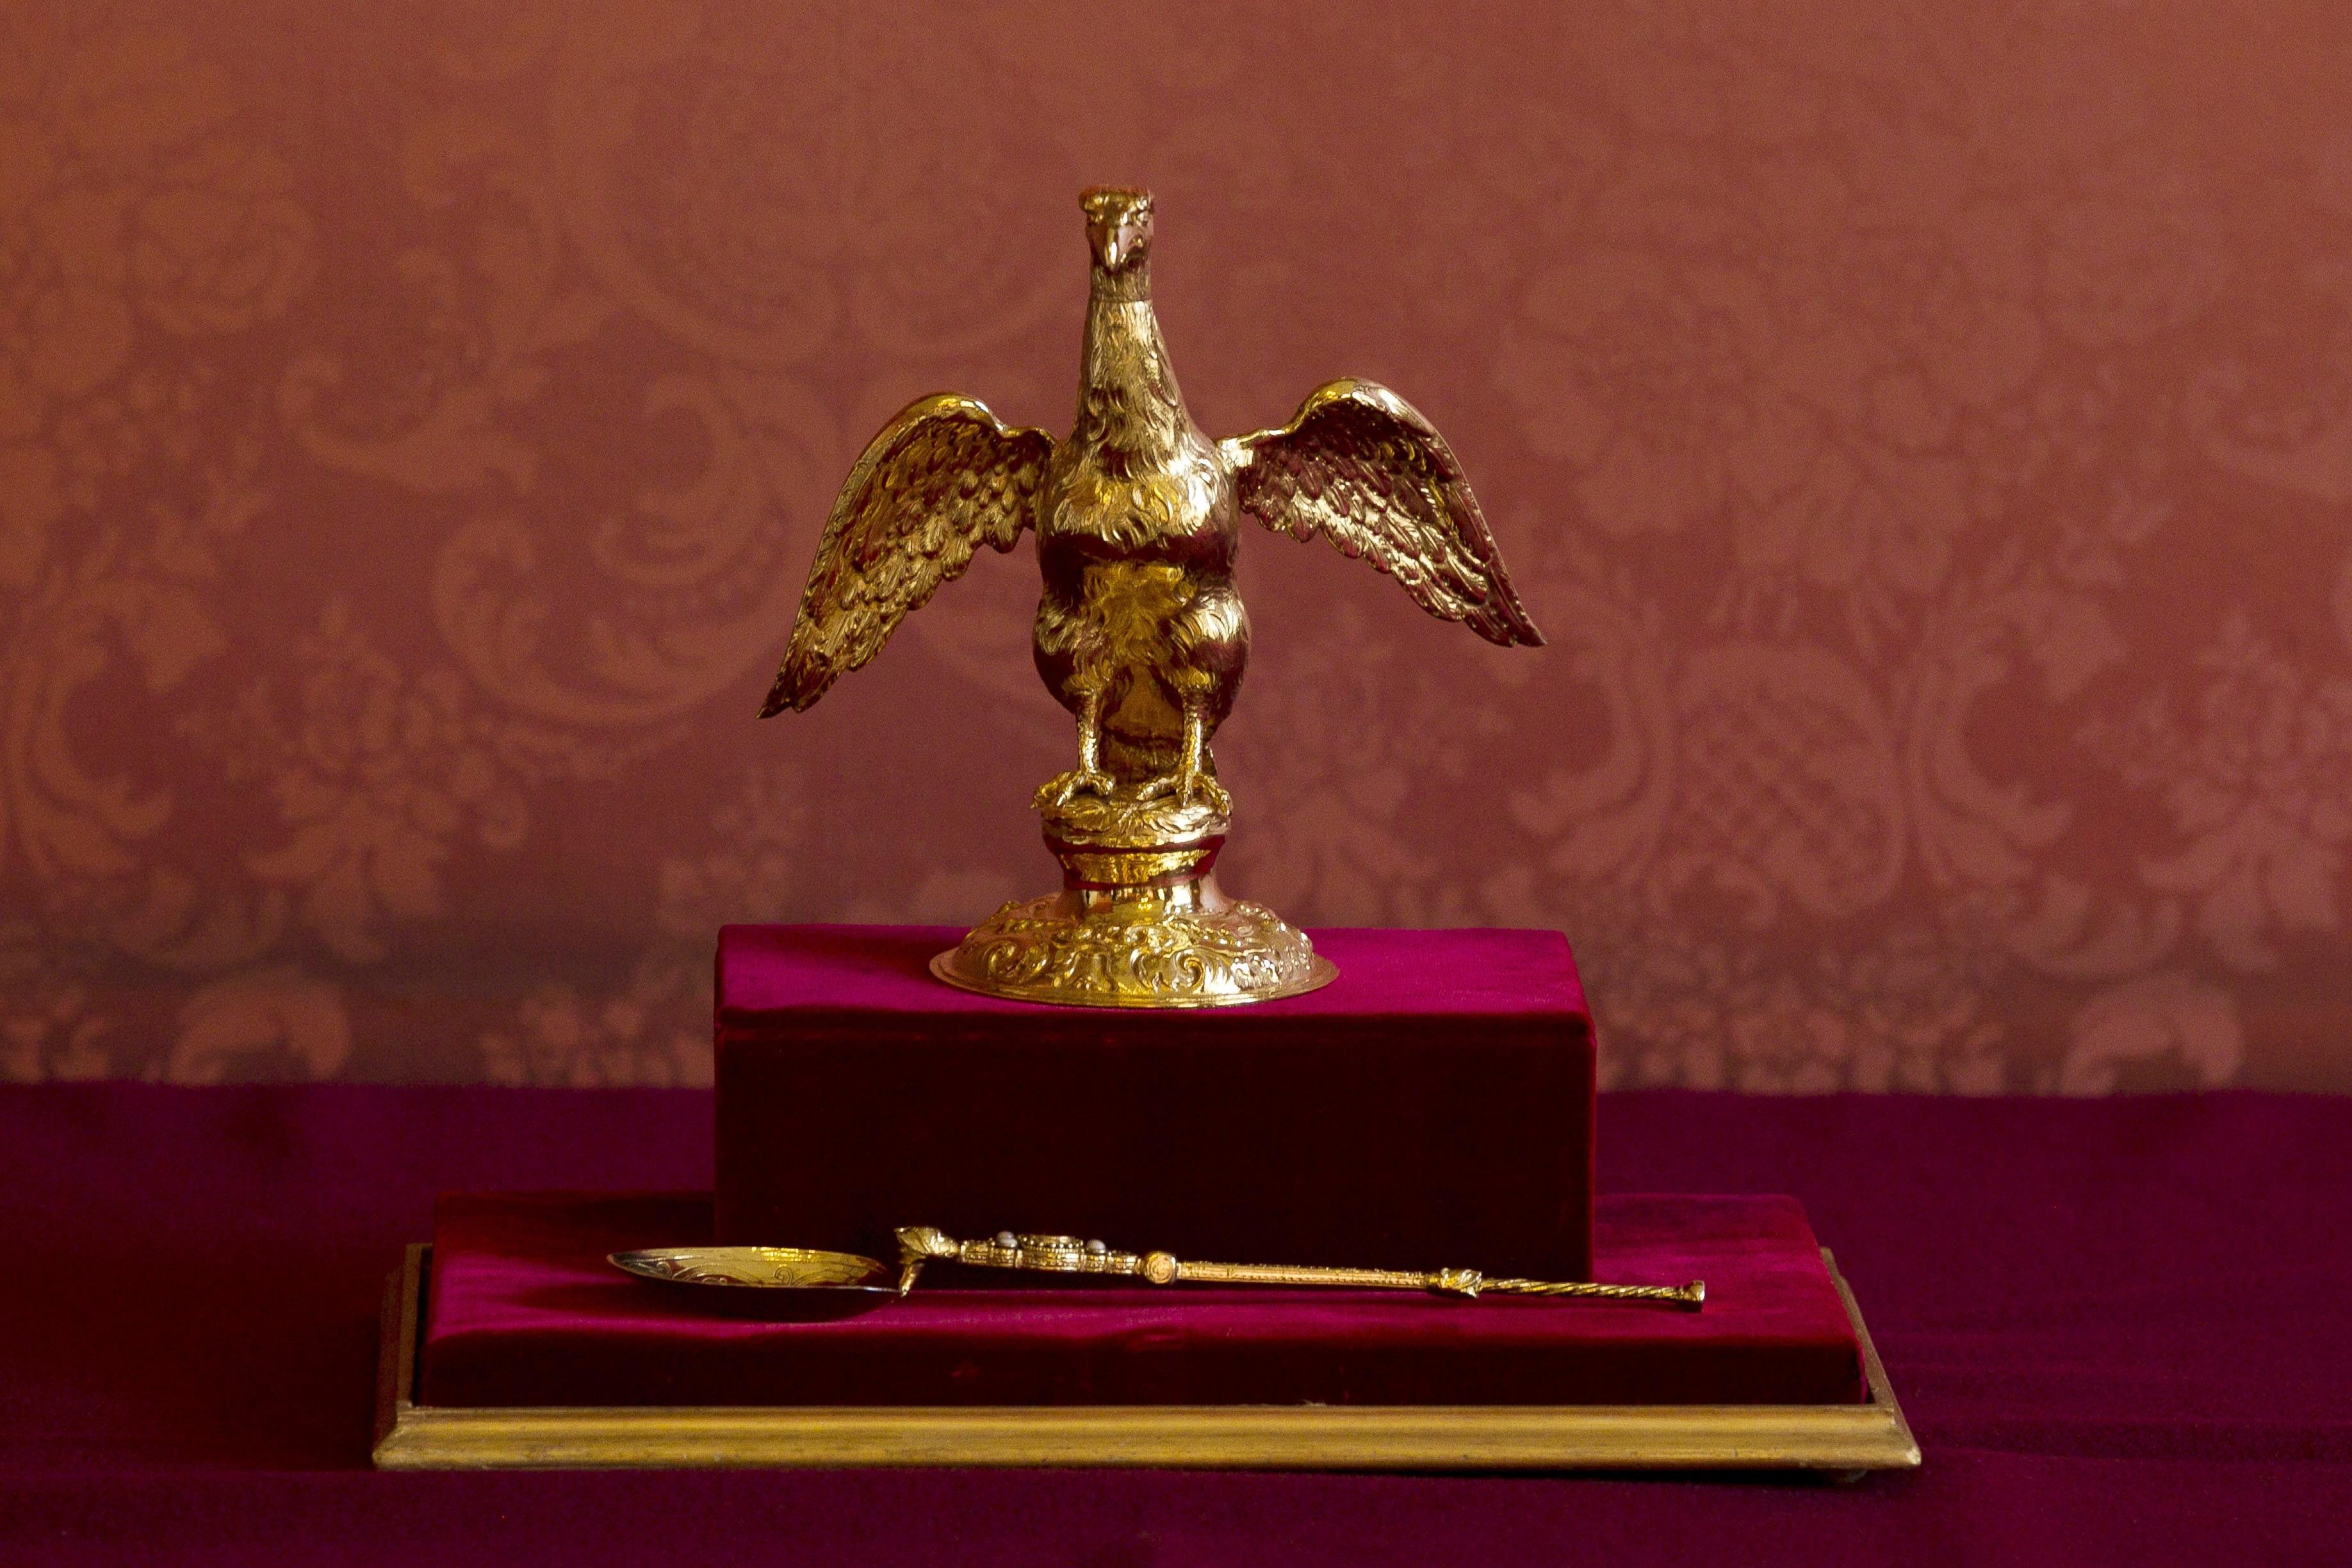 La ampolla y cuchara de la unción que se utilizaron en la coronación de la reina Isabel II en 1953